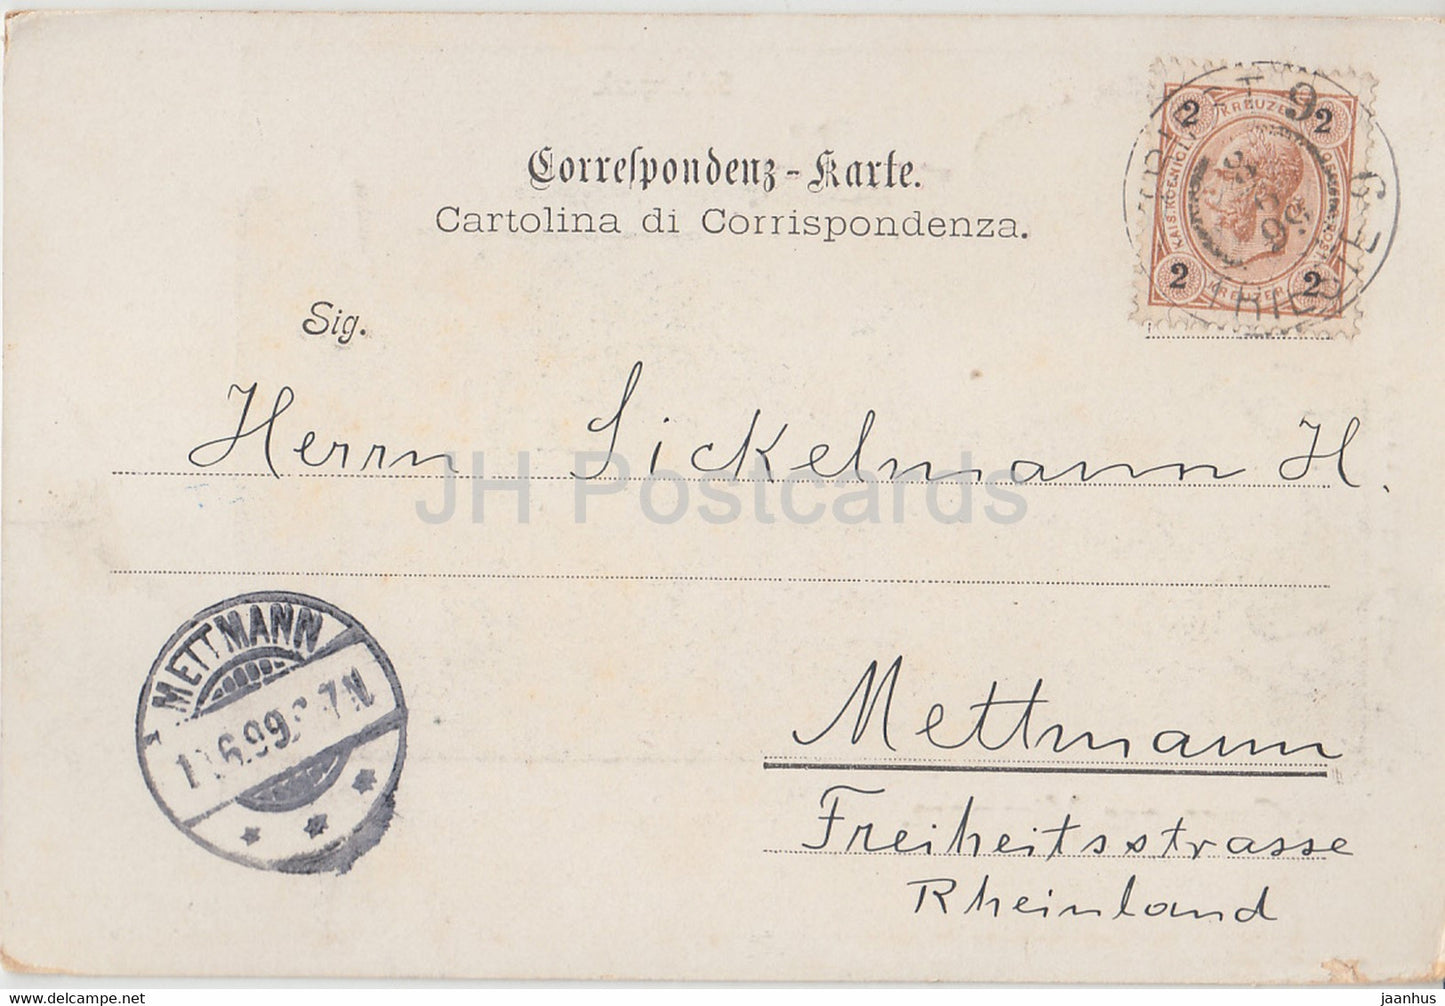 Gruss aus Miramare - Triest -Trieste - Schlosspark - old postcard - 1899 - Italy - used